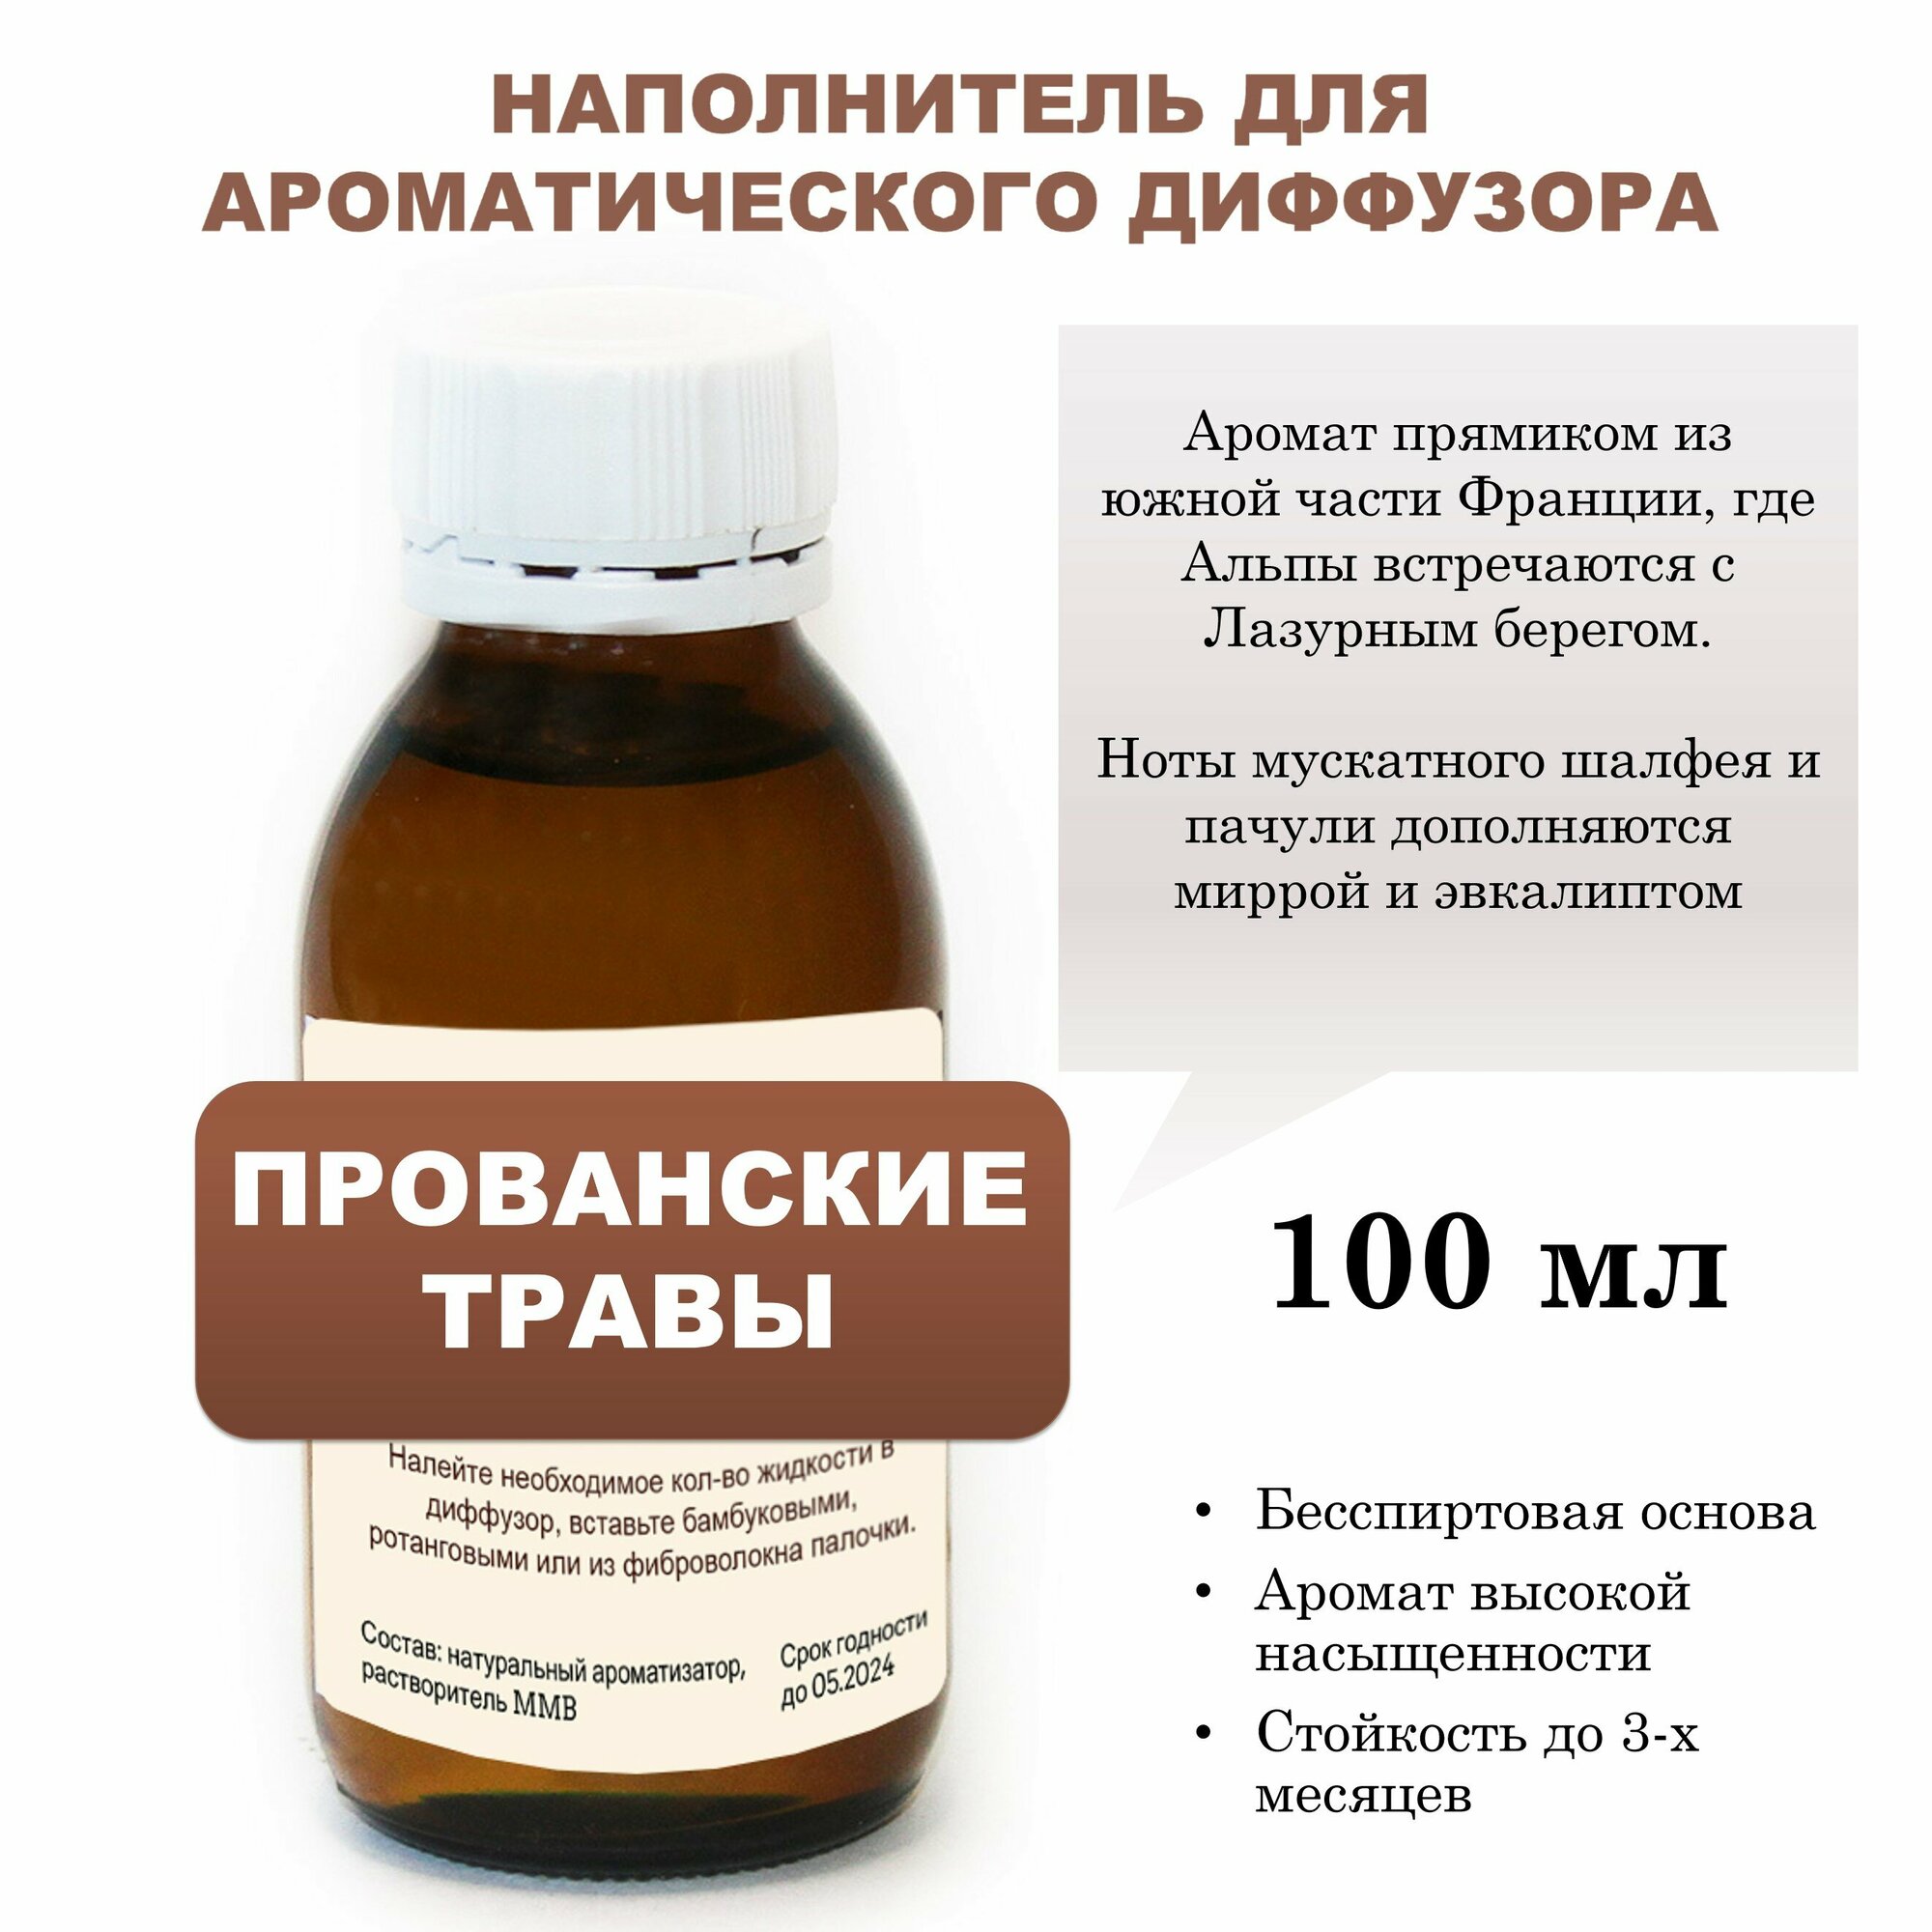 Прованские травы - Наполнитель для ароматического диффузора (100 мл)